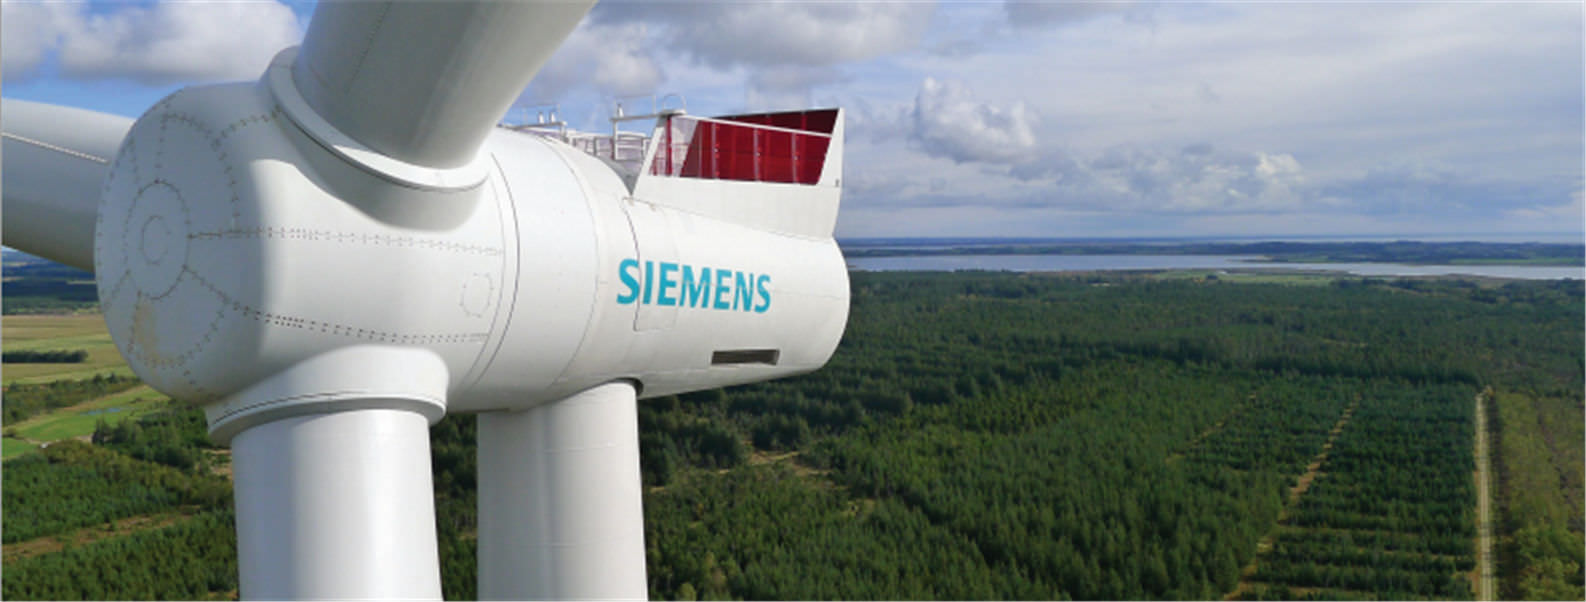 Siemens s’éloigne de l’énergie, confiée à la Bourse